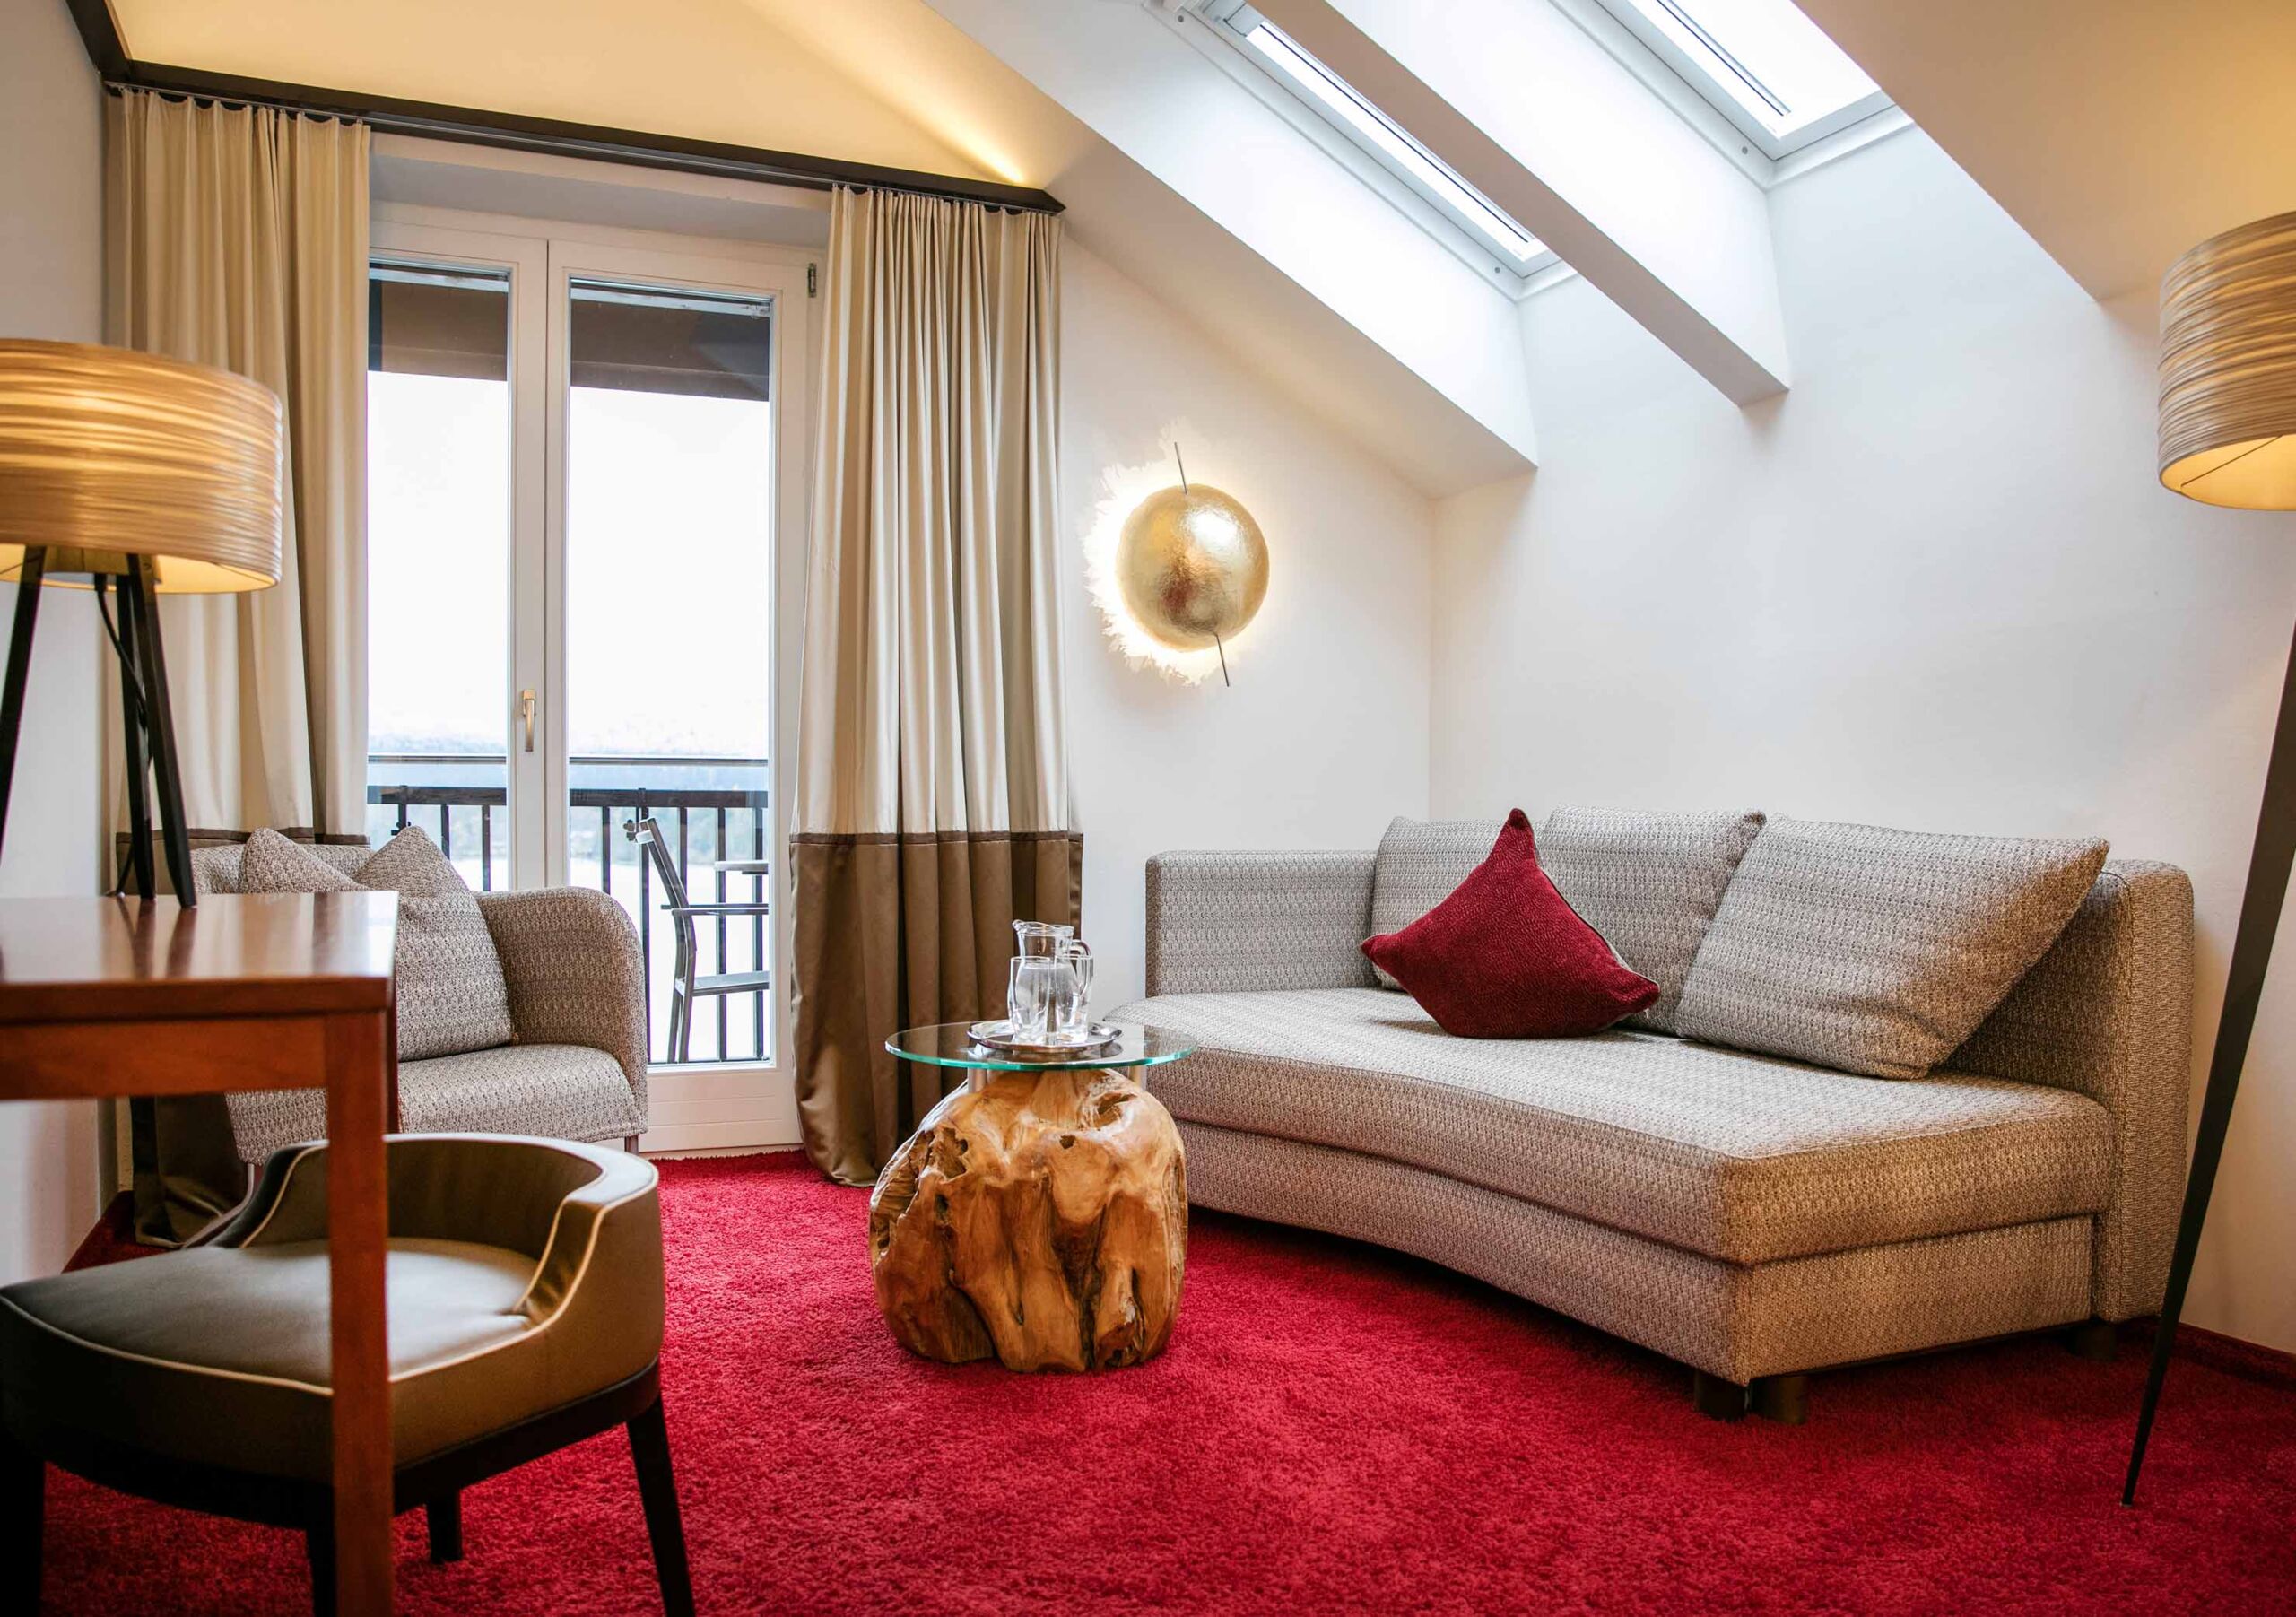 Helles Zimmer mit rotem Teppichboden und moderner Einrichtung verfügt über einen Balkon mit atemberaubendem Blick auf den Wolfgangsee sowie einem gemütlichen Sofa und einem Couchsessel